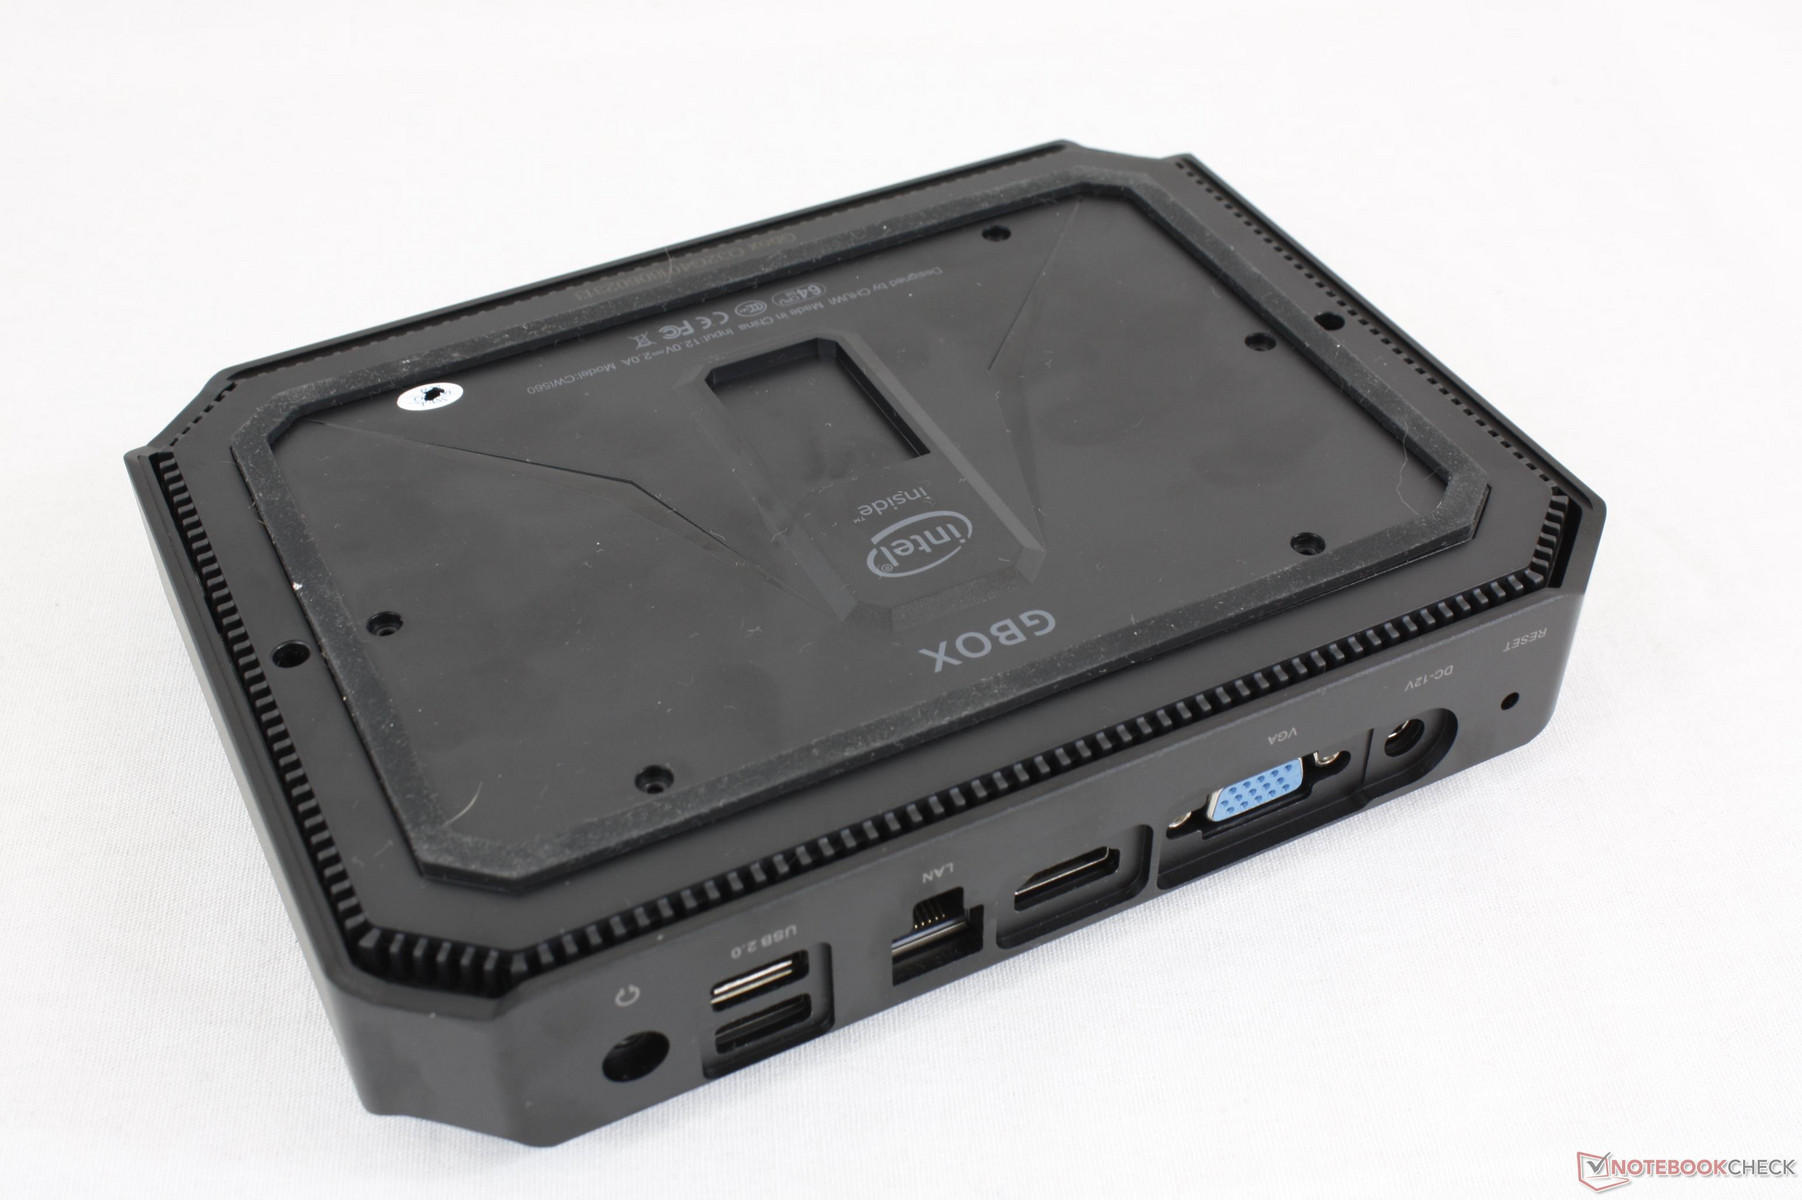 Chuwi GBox CWI560 (Celeron N4100) Mini PC Review - NotebookCheck 